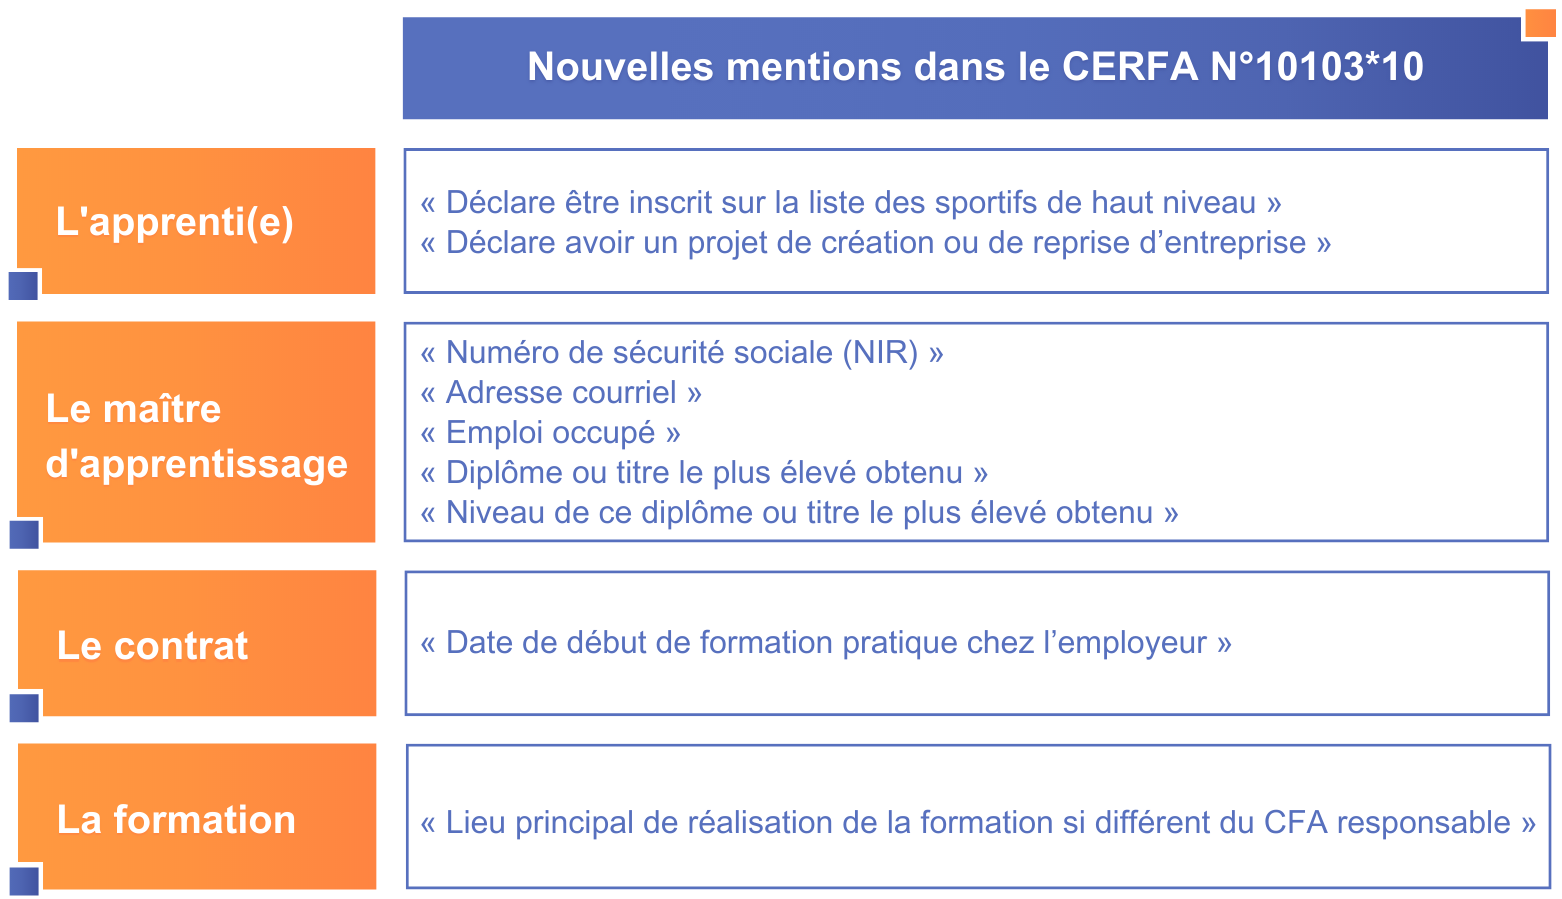 L'image illustre un tableau des nouvelles mentions du CERFA d'apprentissage selon les catégories.